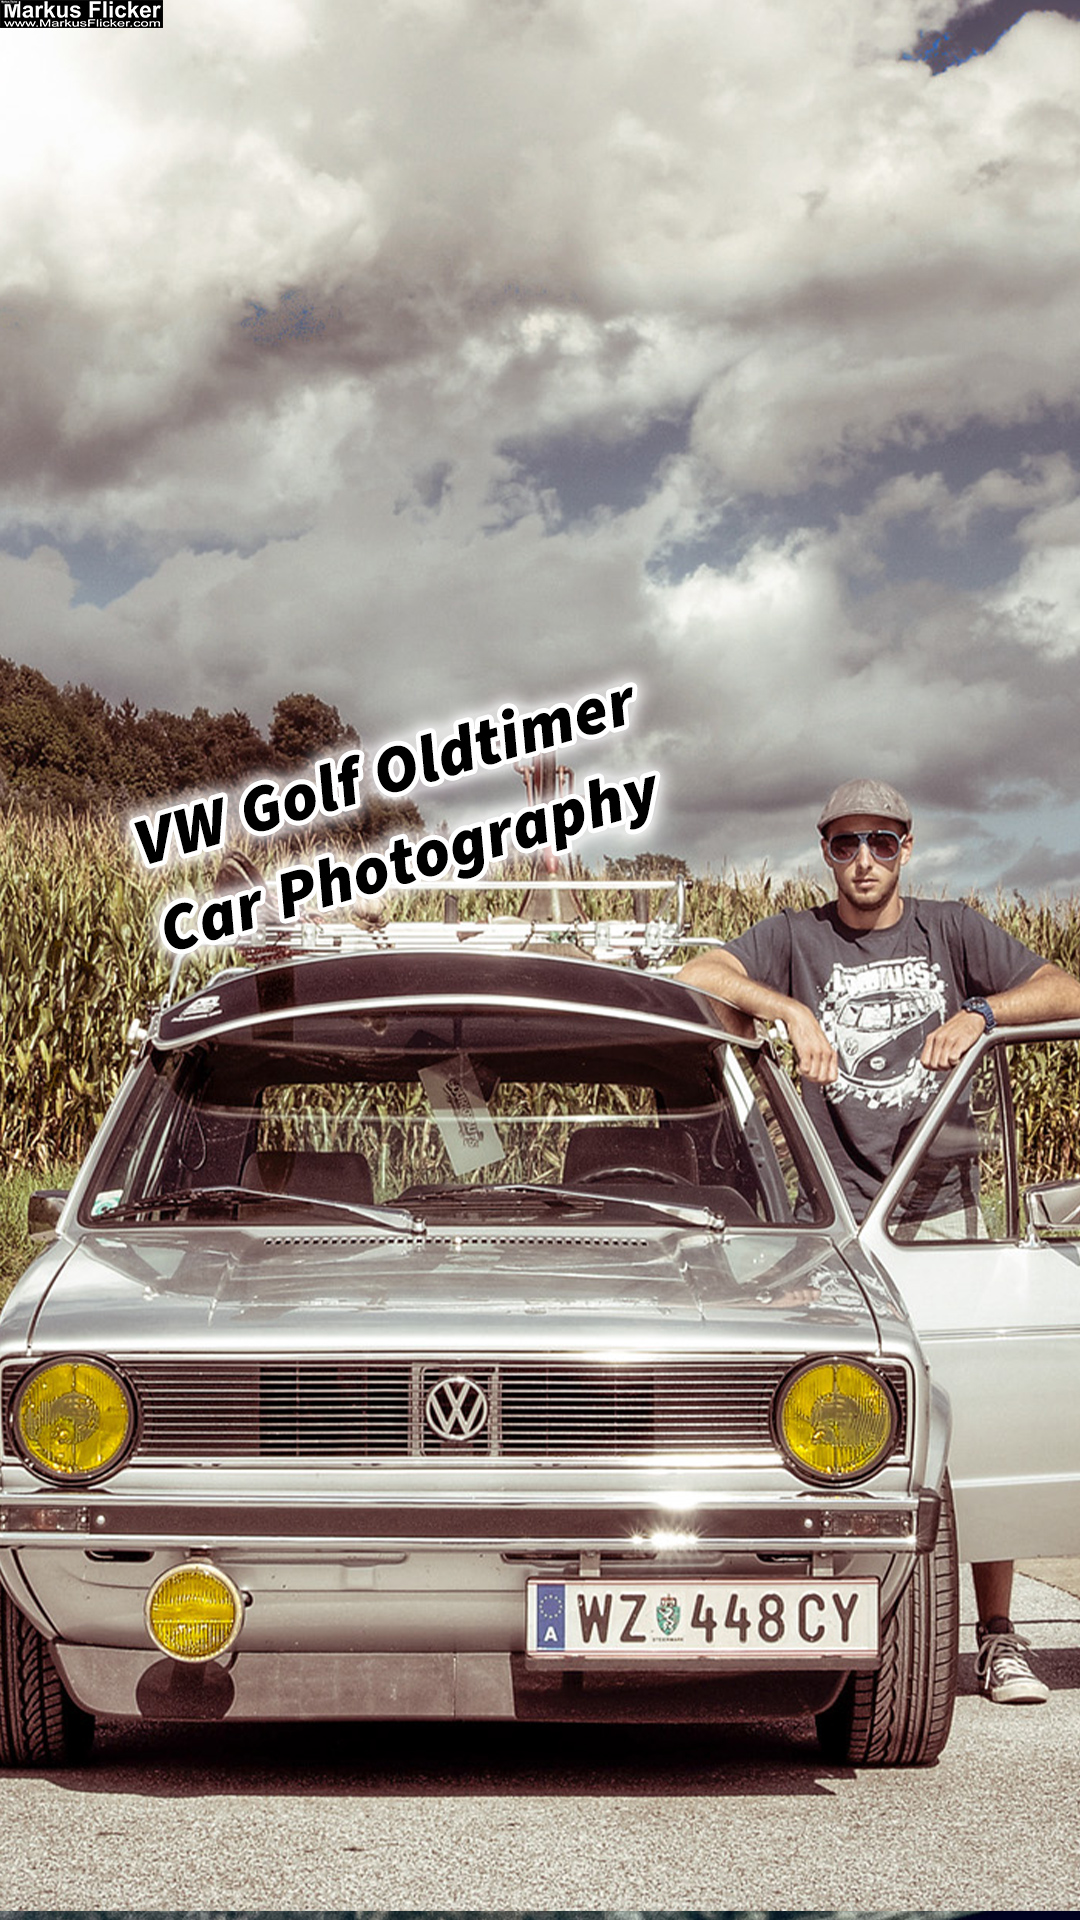 Restaurierte Schönheit: VW Golf Oldtimer Car Photography HDR Look. Zeitreise auf Rädern: Ein fotografischer Tribut an den VW Golf 1 Oldtimer.